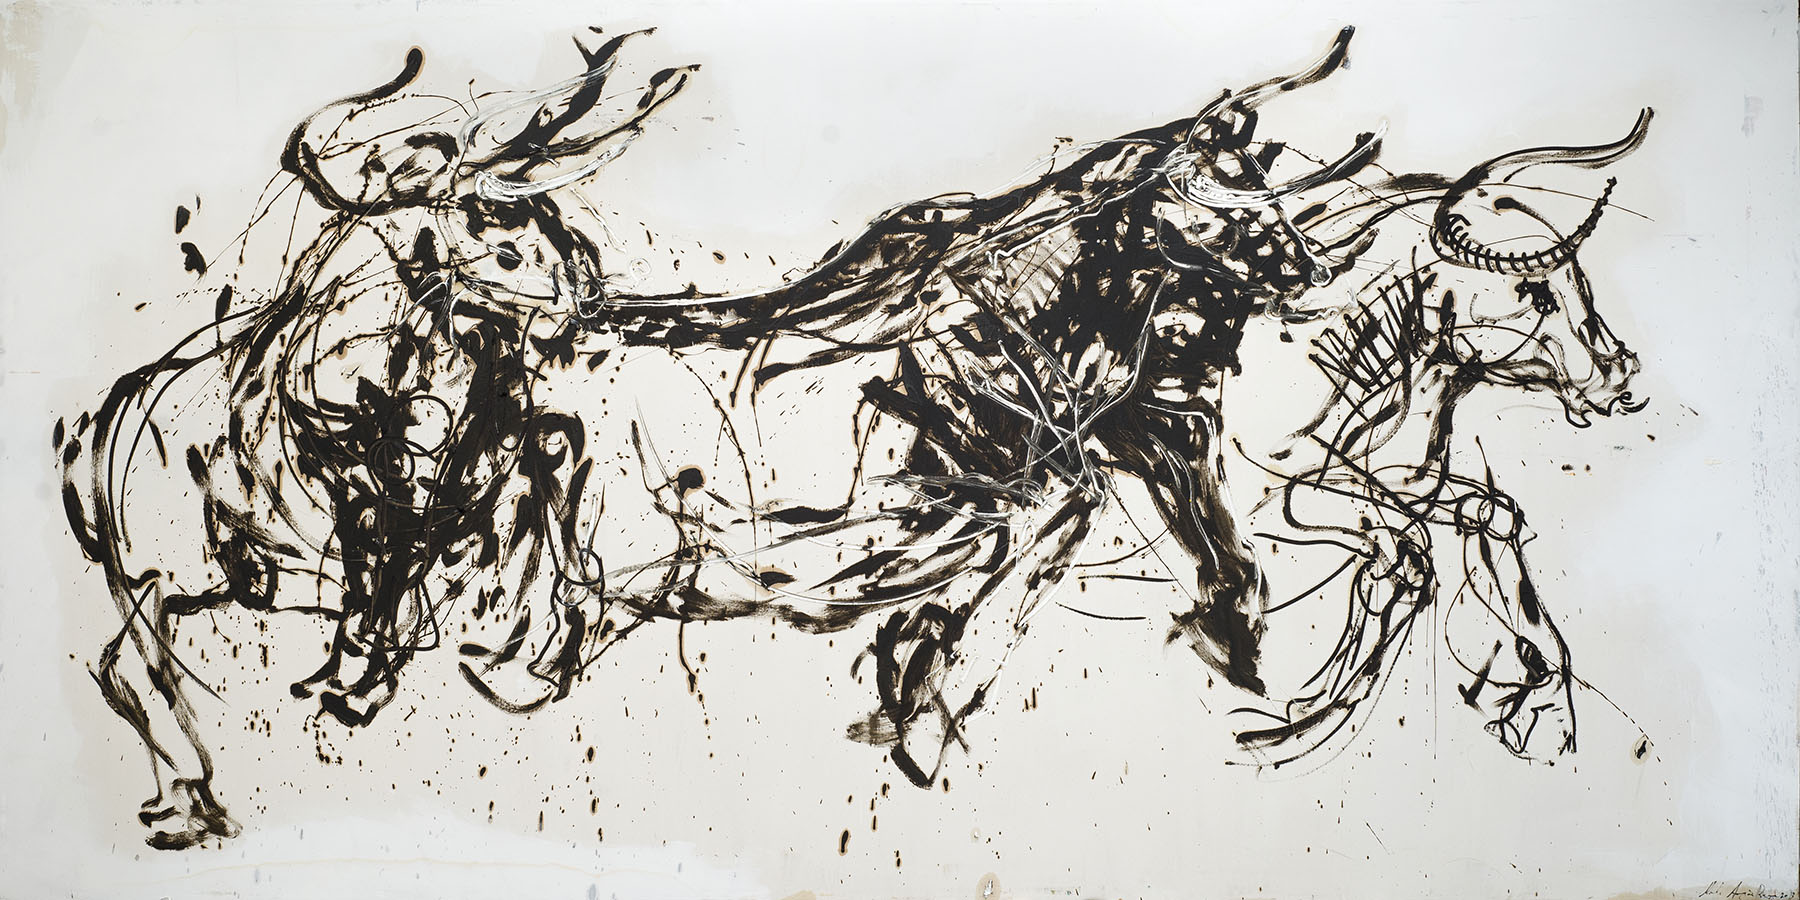  141 Toros, óleo sobre tela, 200 x 400 cm